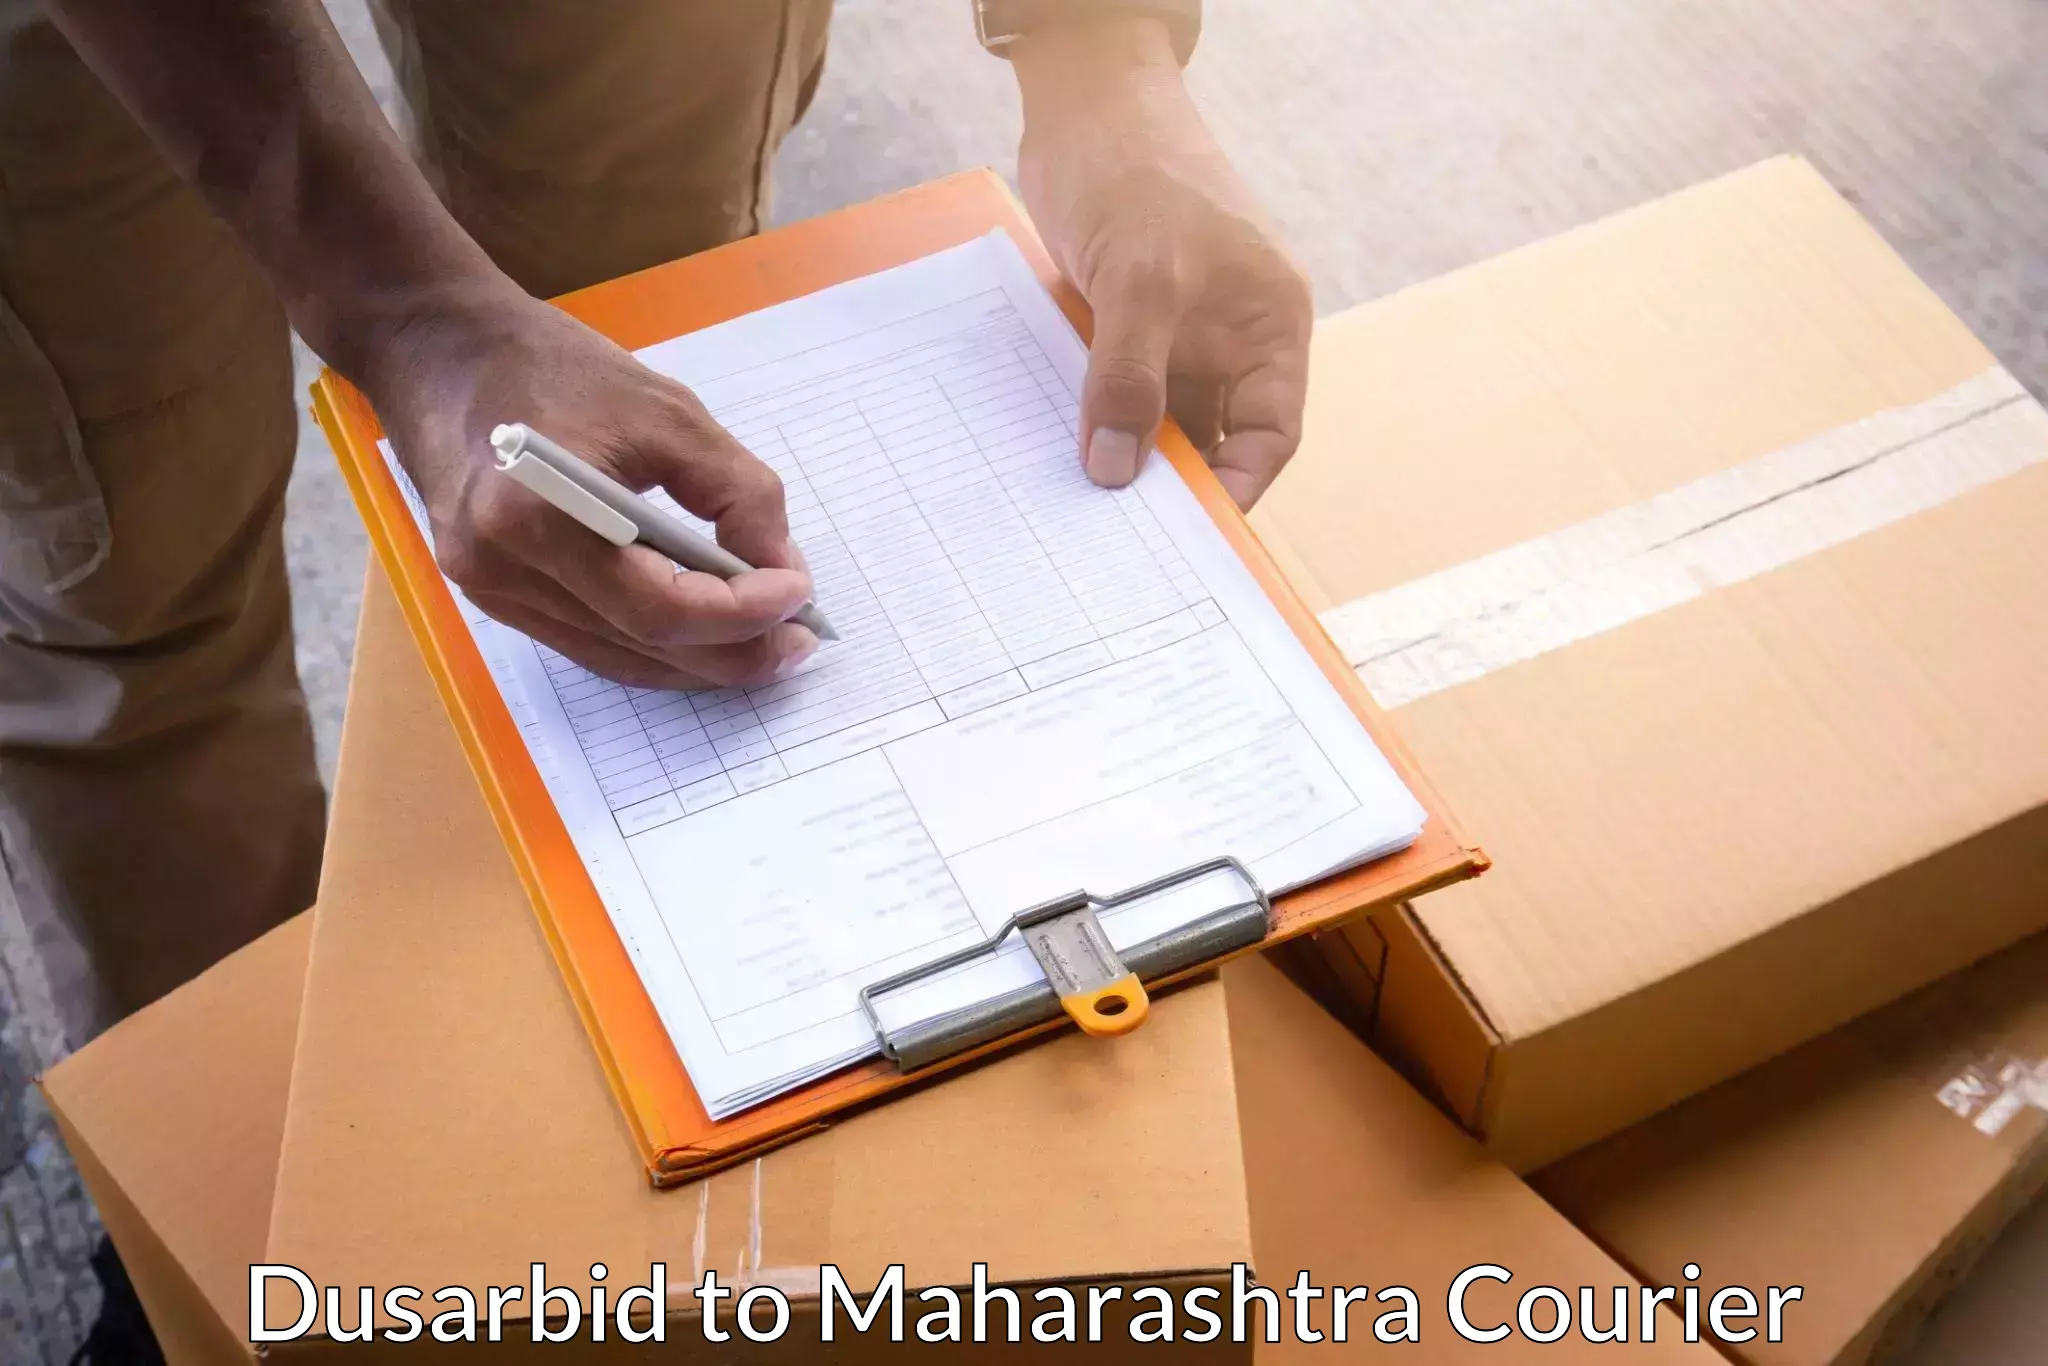 Seamless shipping experience Dusarbid to Maharashtra